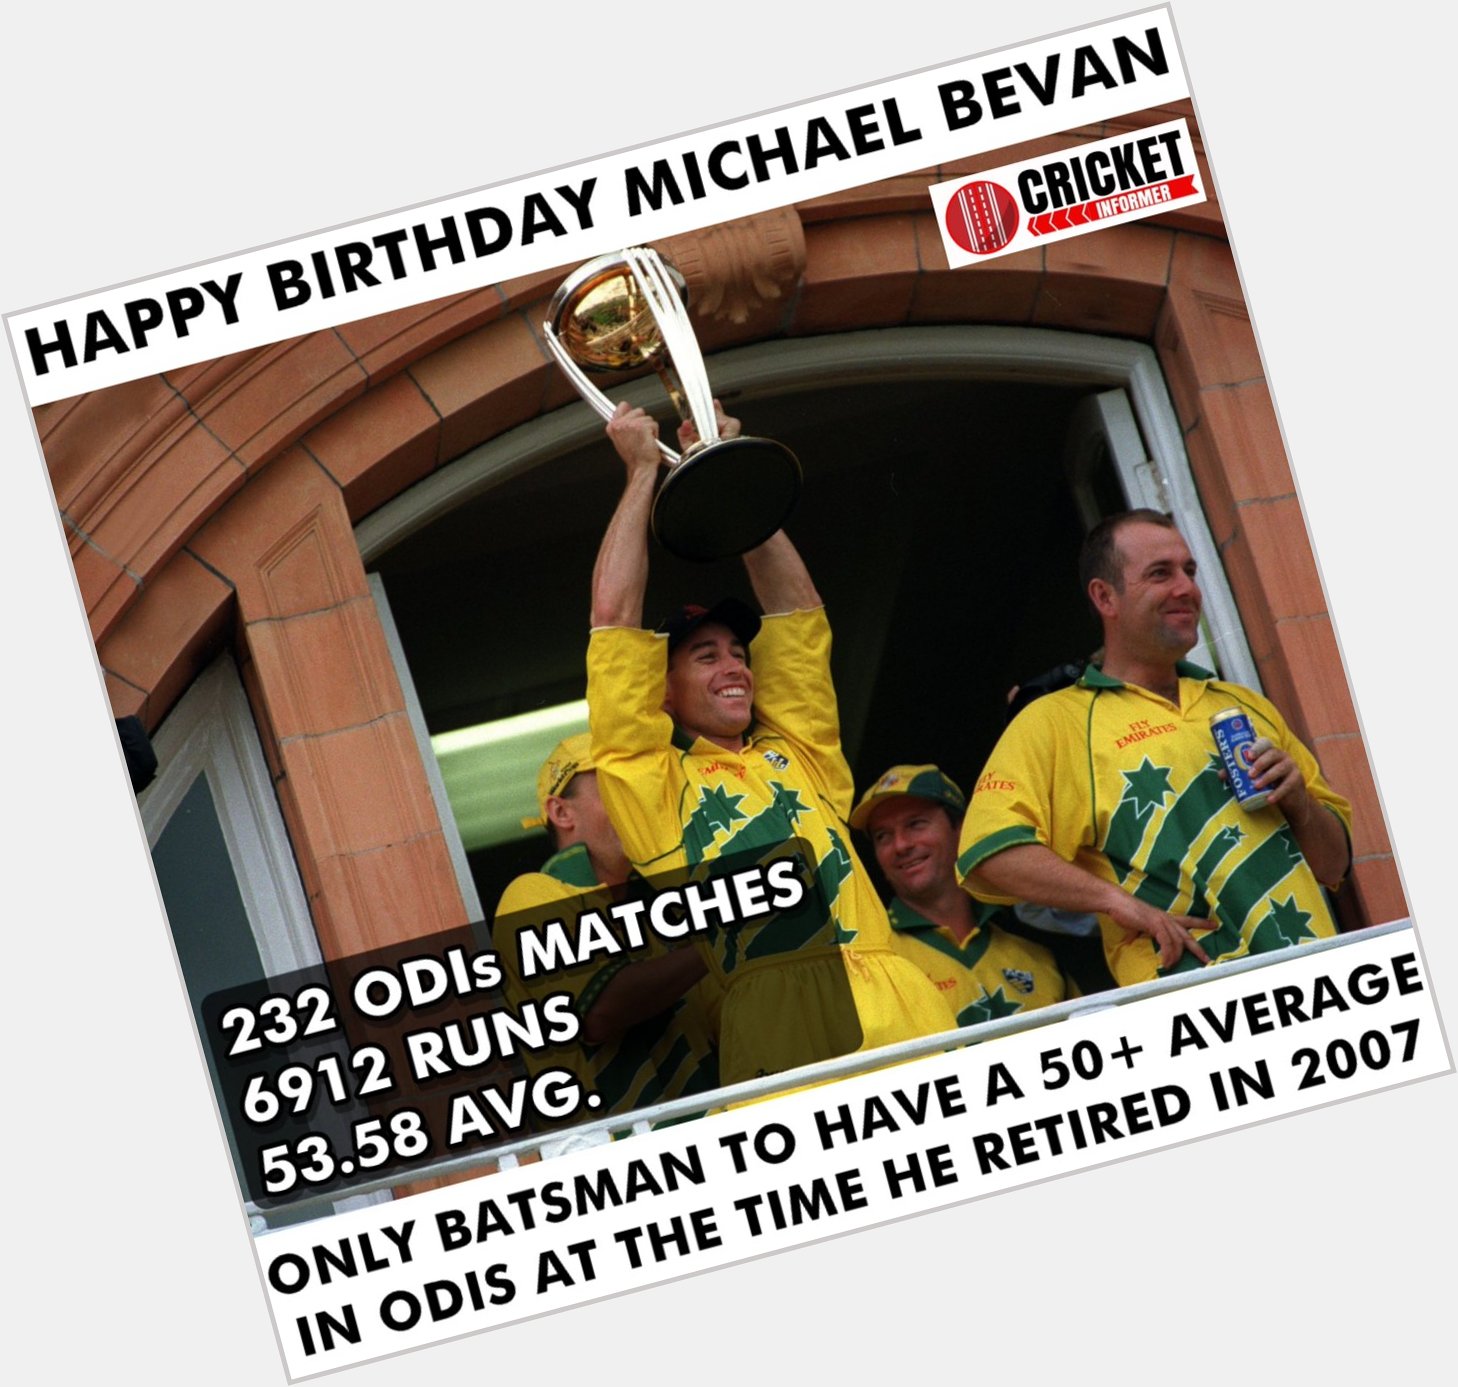 Happy Birthday Michael Bevan. 